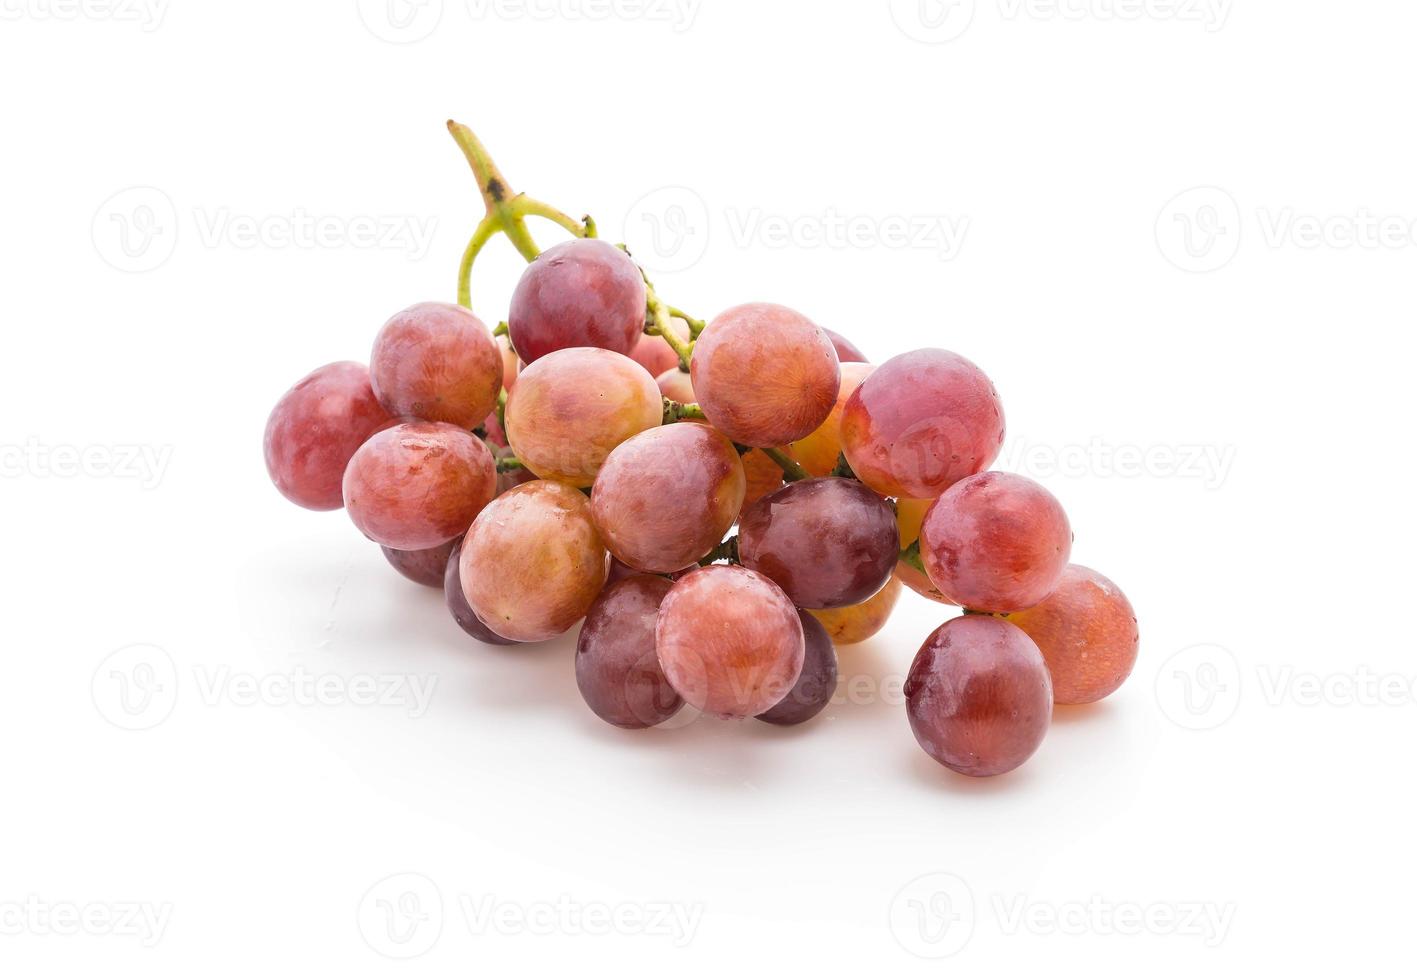 uvas frescas em fundo branco foto